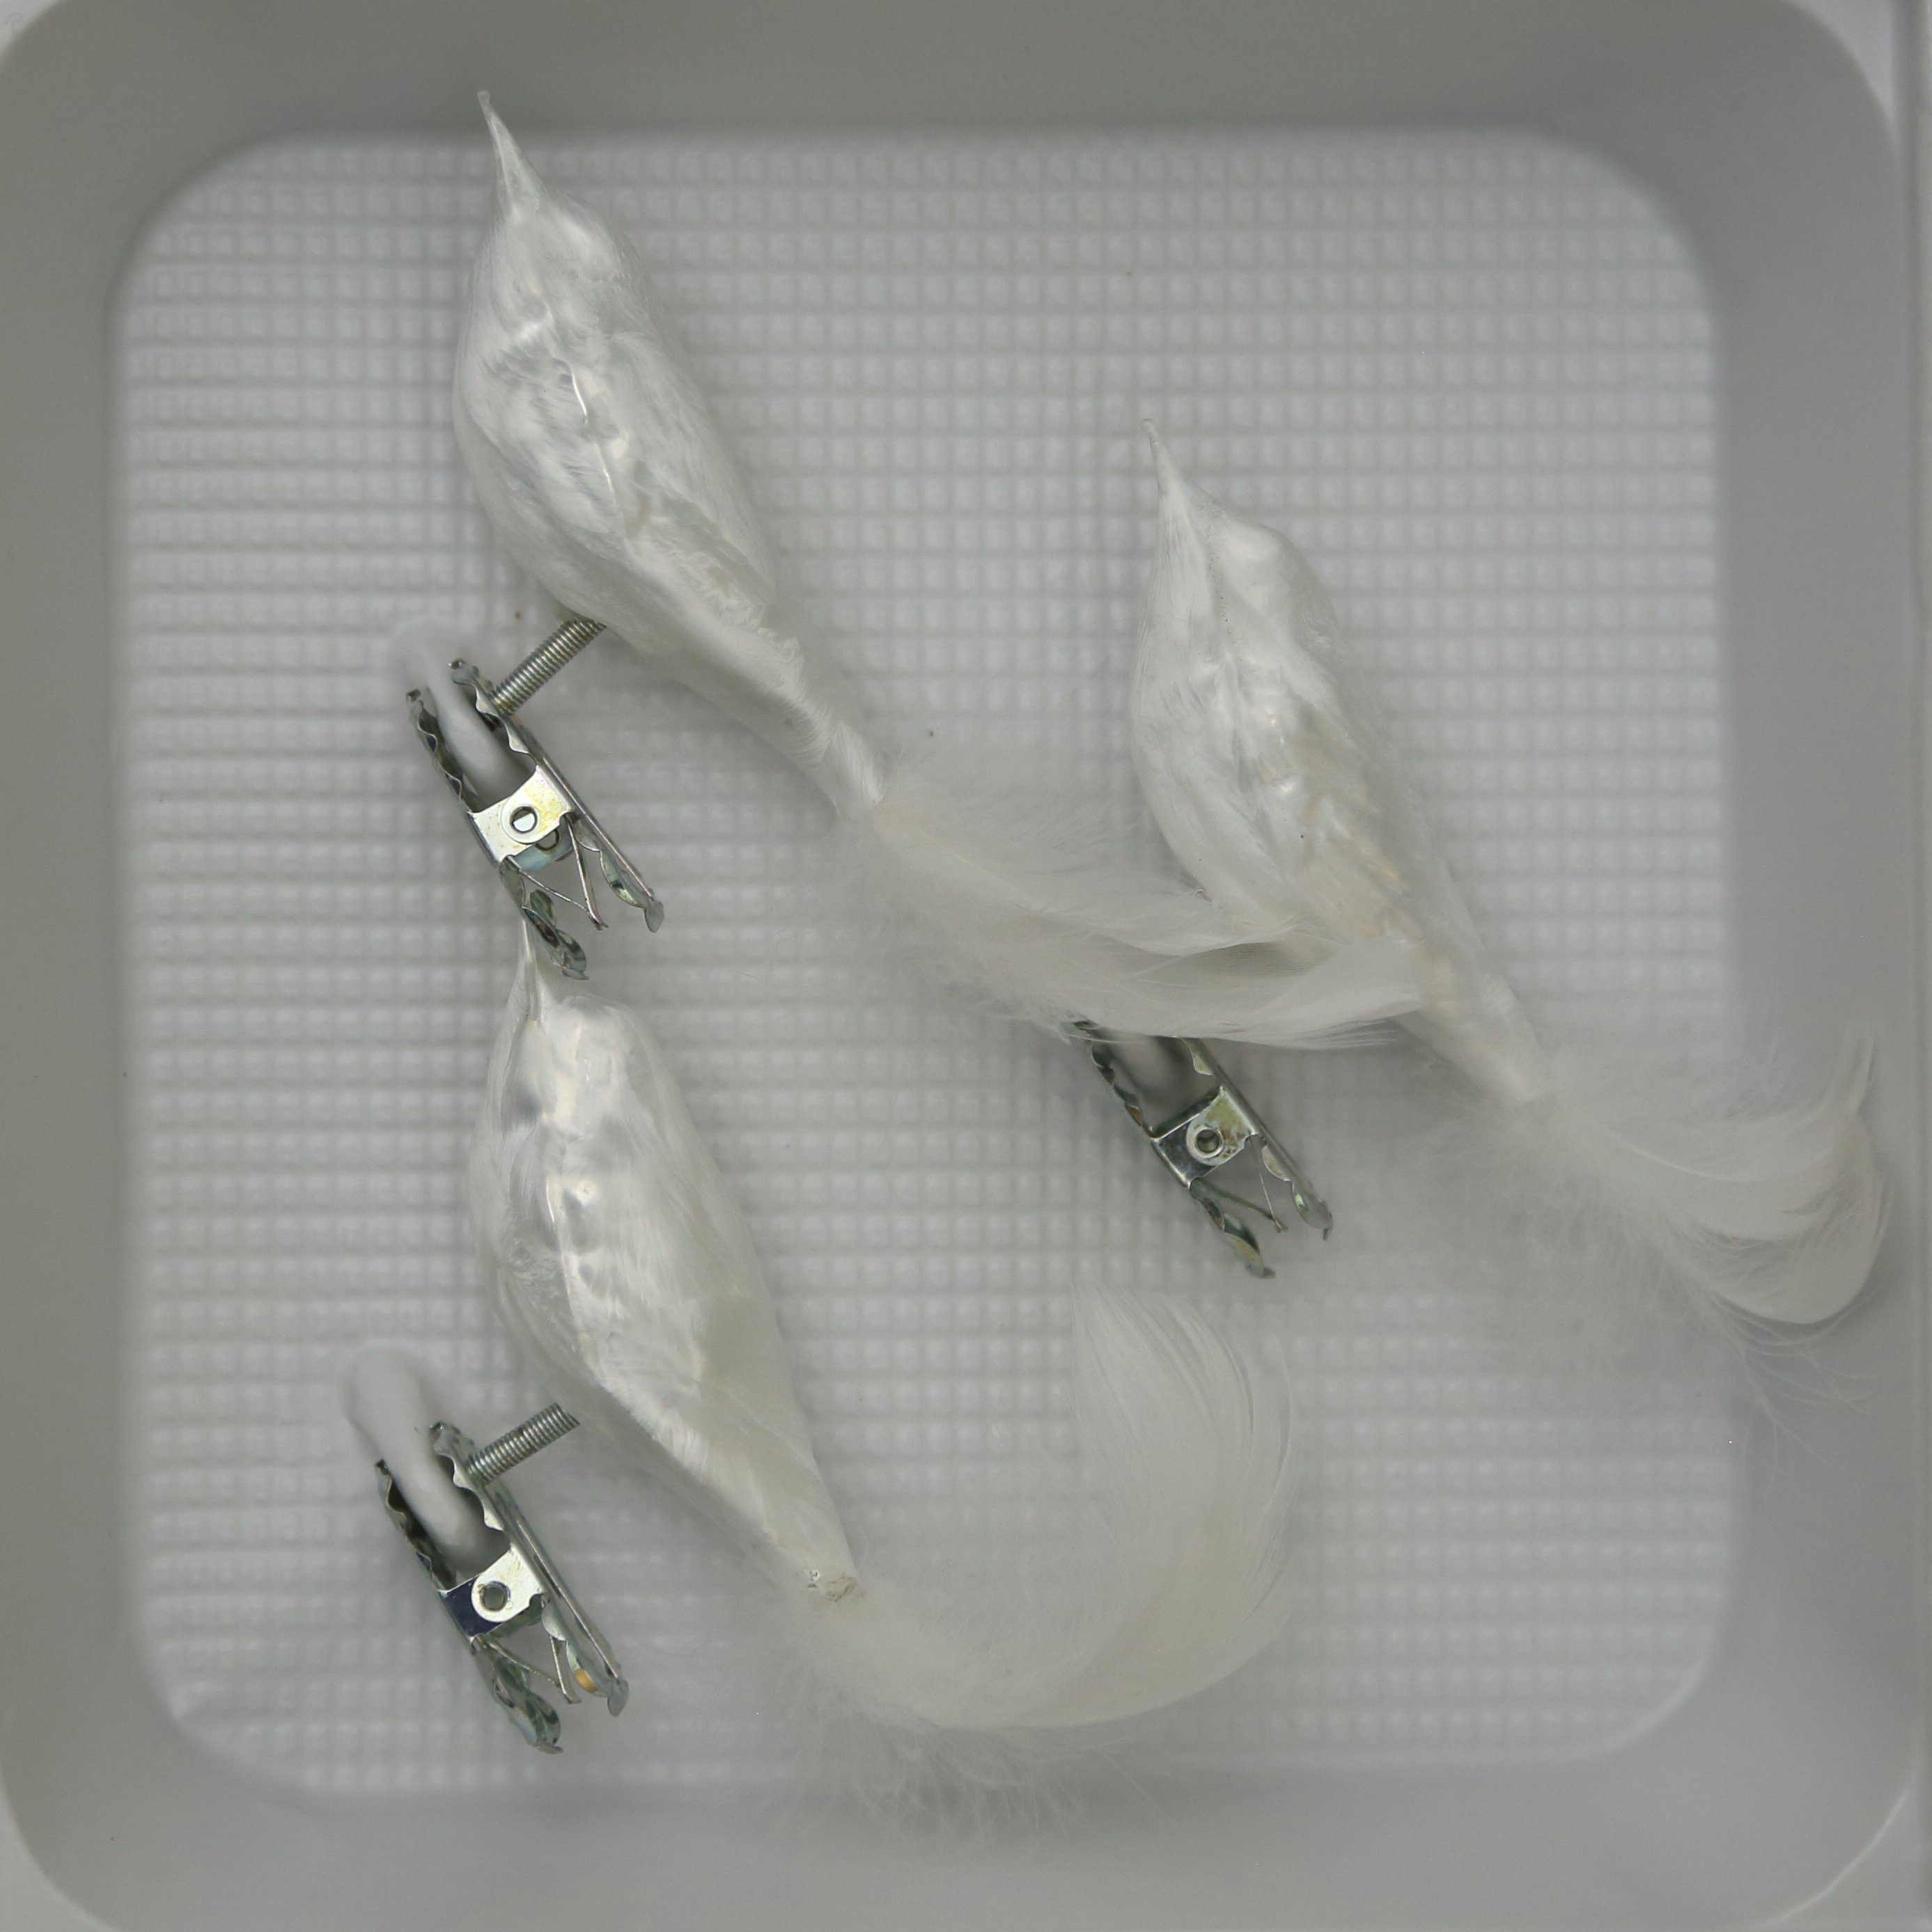 Christbaumschmuckvögel Lauschaer Farben verschiedenen Glas Christbaumschmuck Eislack in weiß